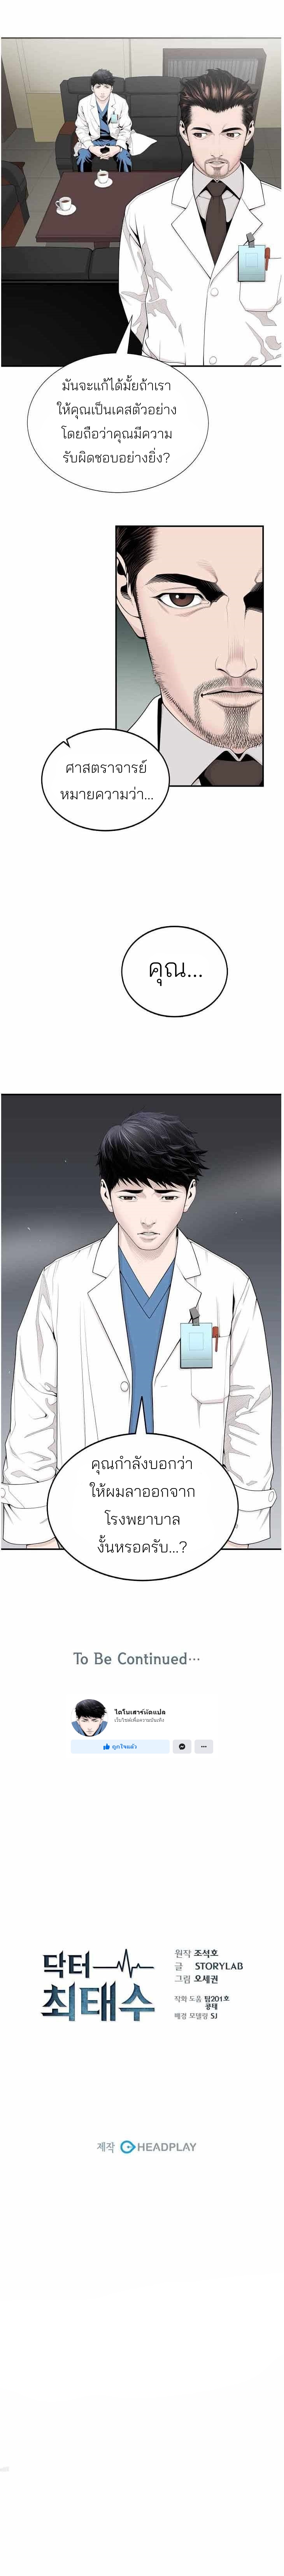 Dr. Choi Tae-Soo